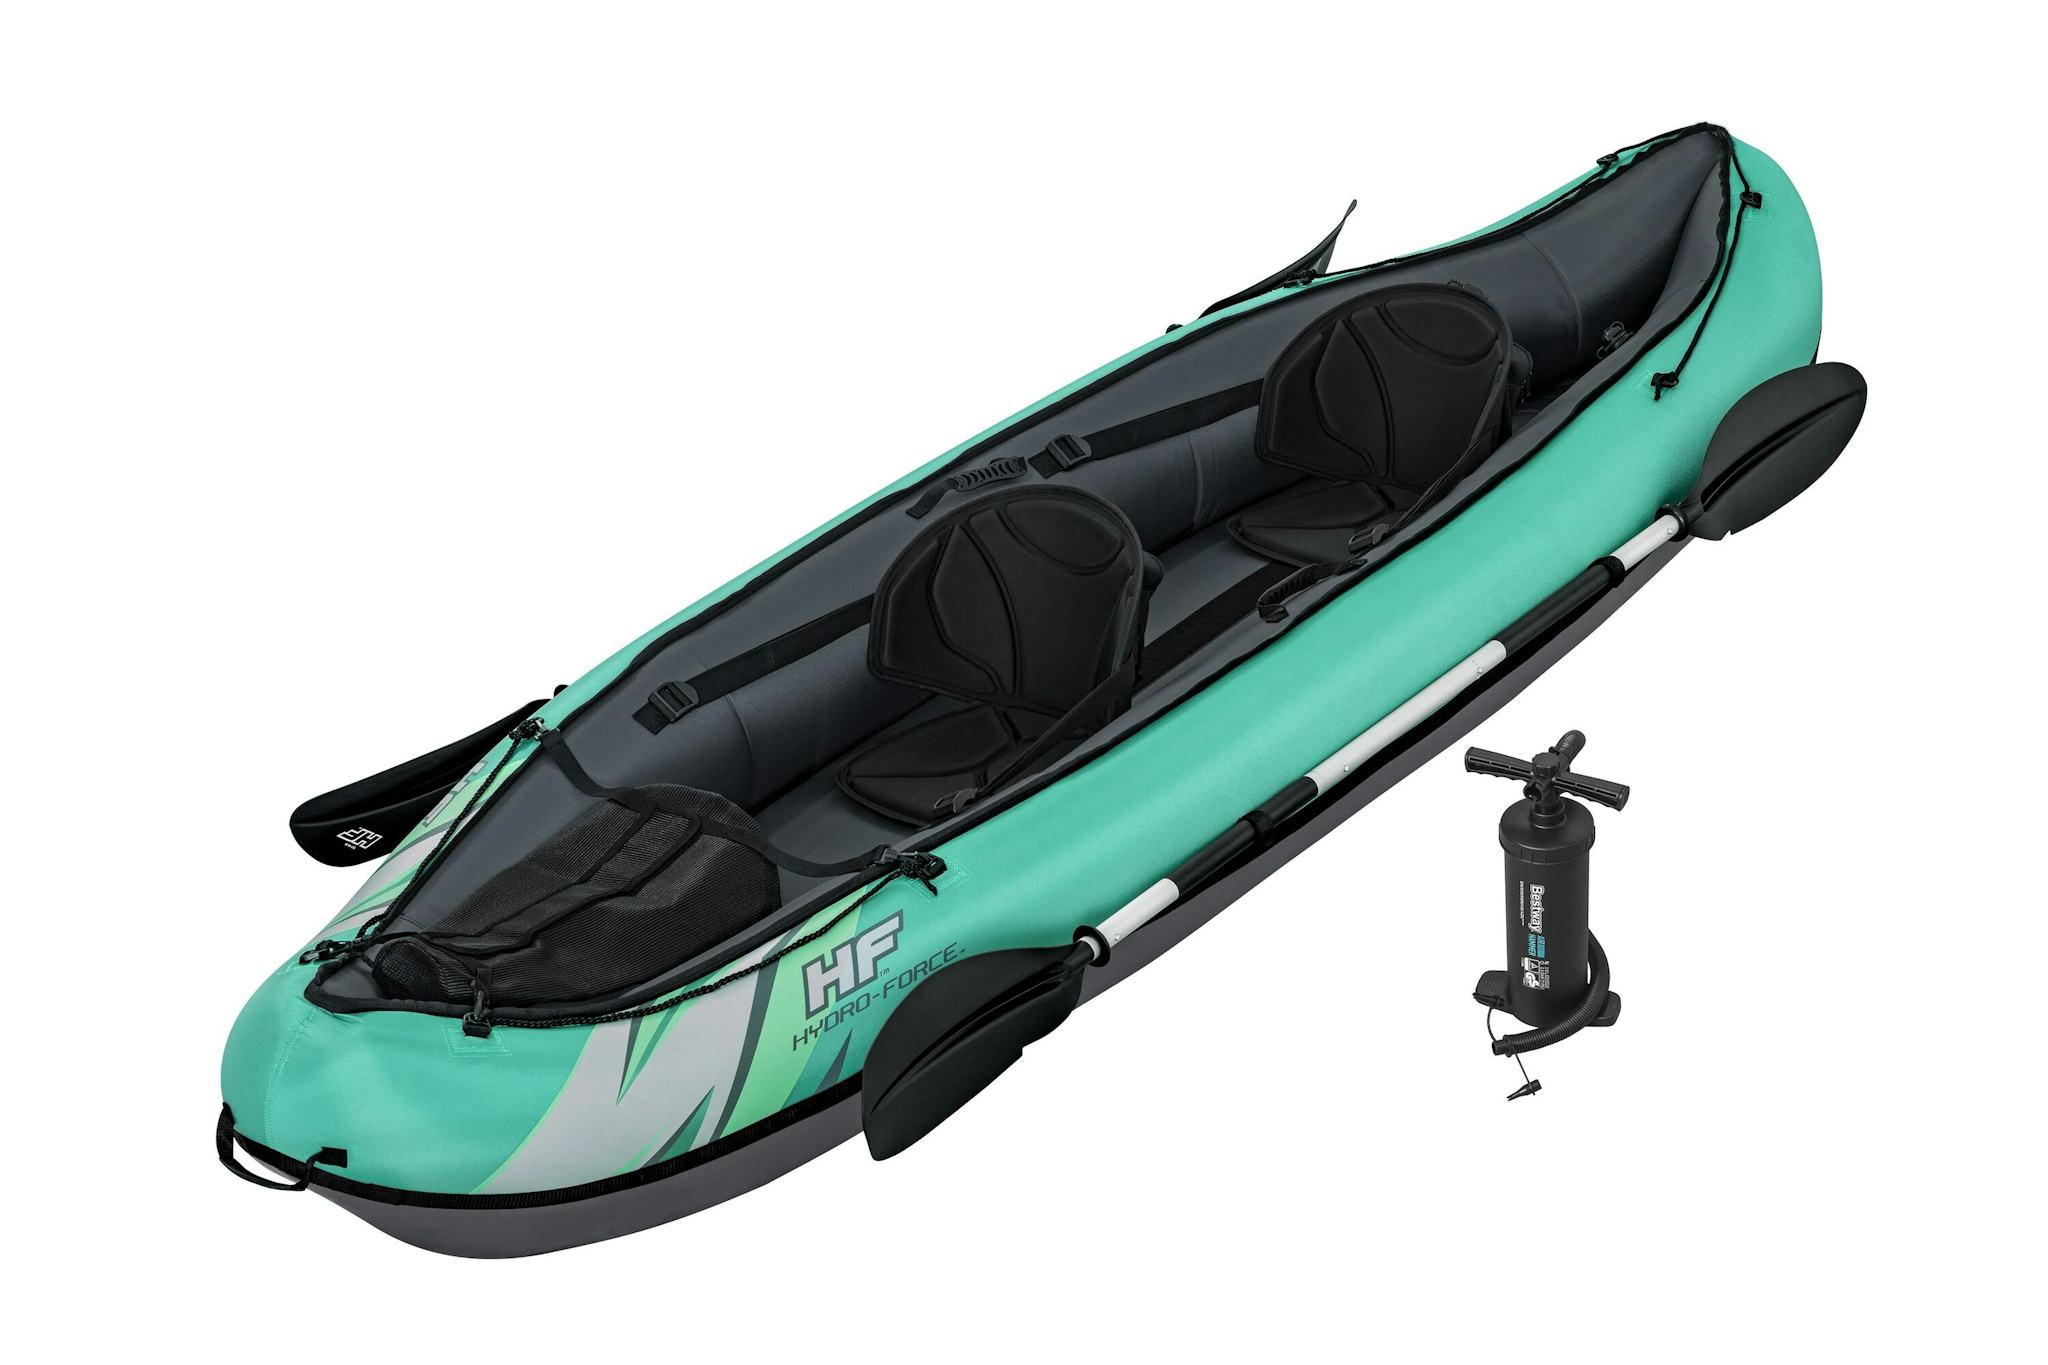 Sports d'eau Kayak gonflable Hydro-Force™ Ventura Elite X2 330 x 86 cm 2 adultes, pagaie, pompe Bestway 2